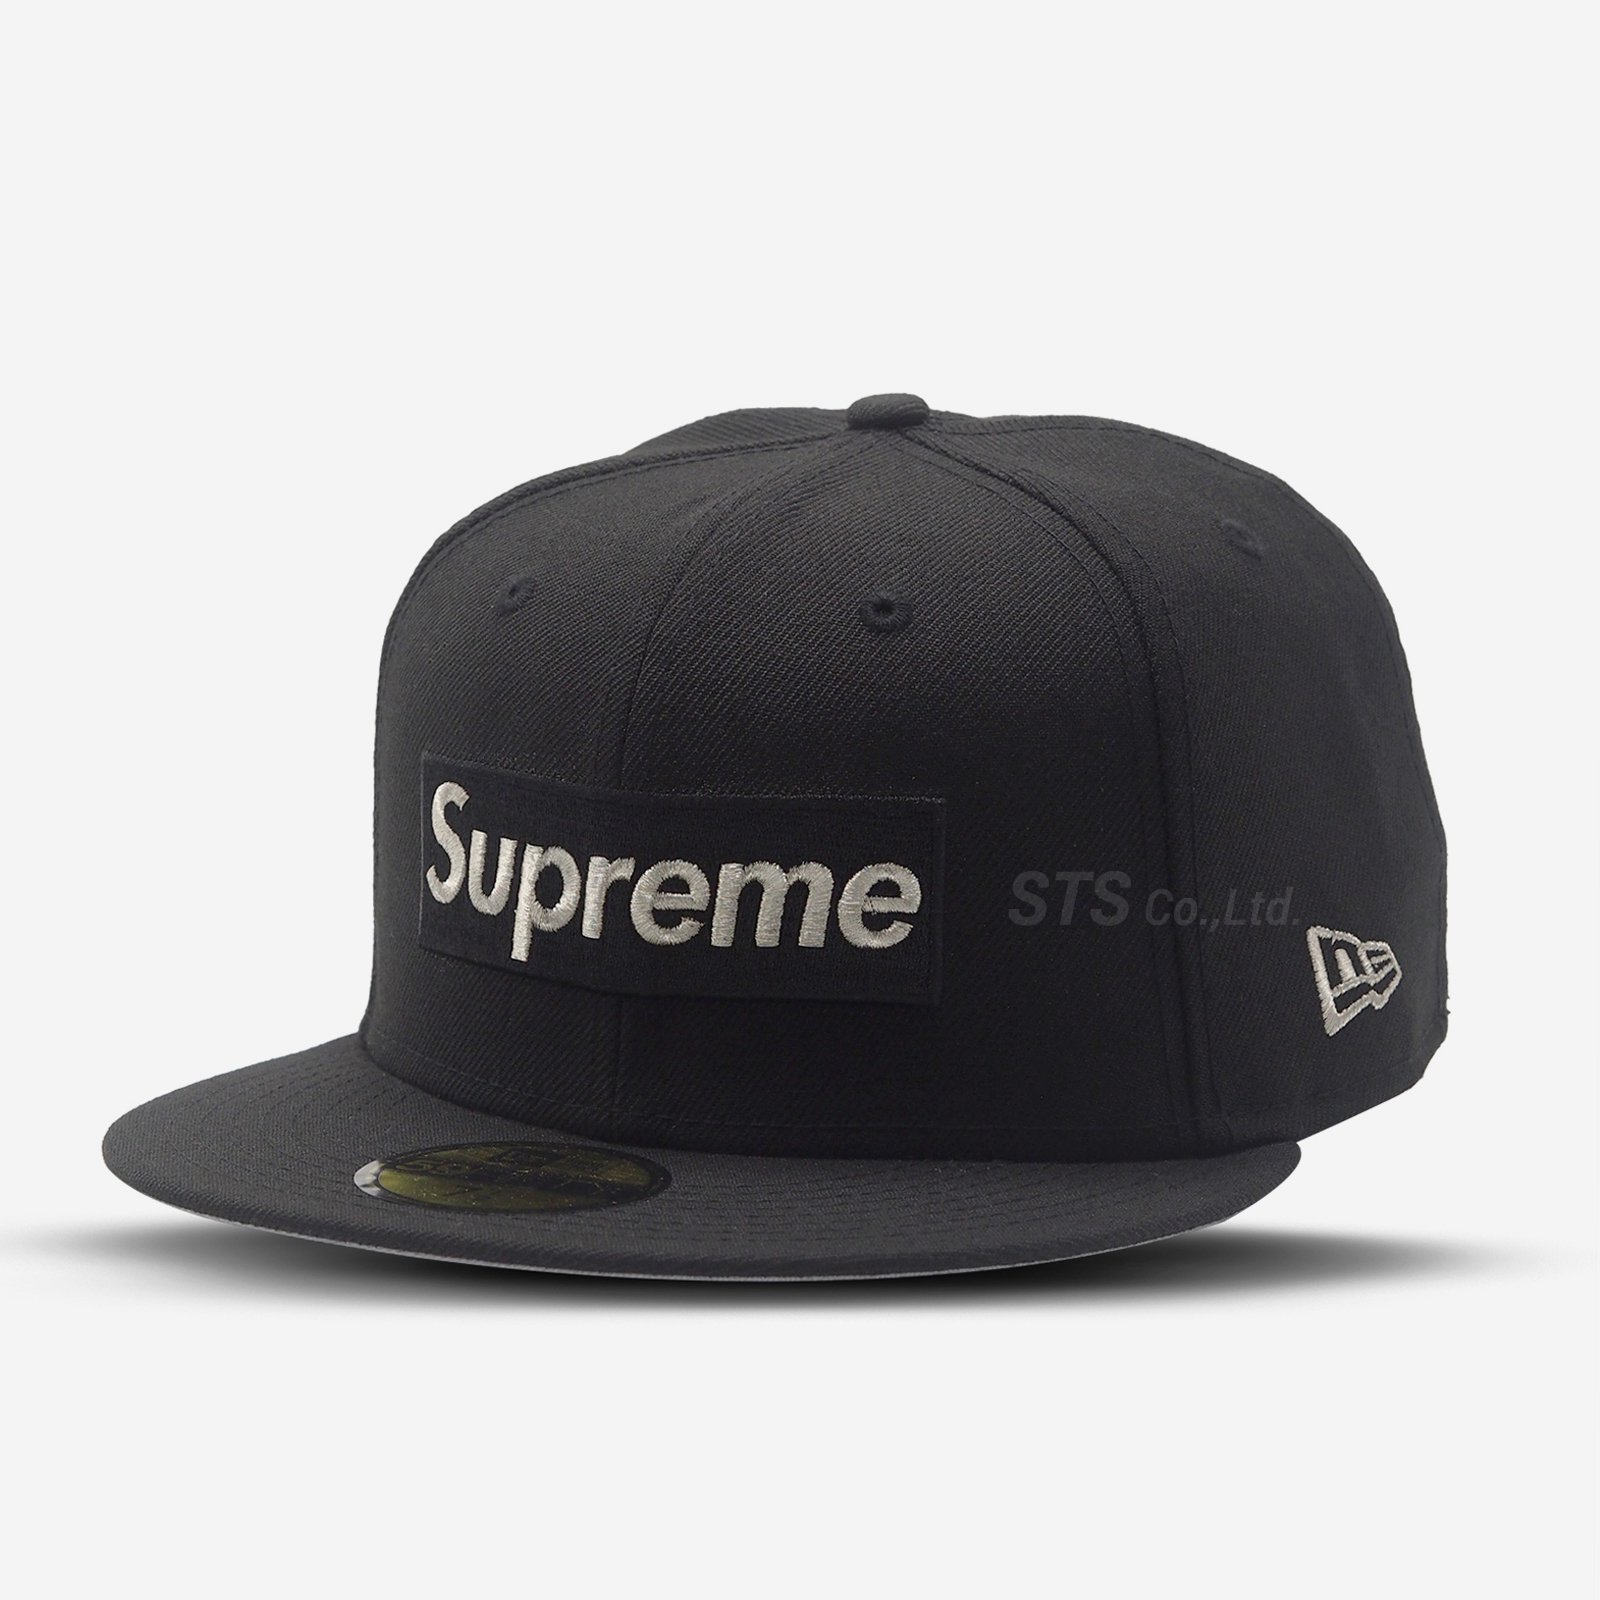 帽子 キャップ Supreme - $1M Metallic Box Logo New Era - ParkSIDER